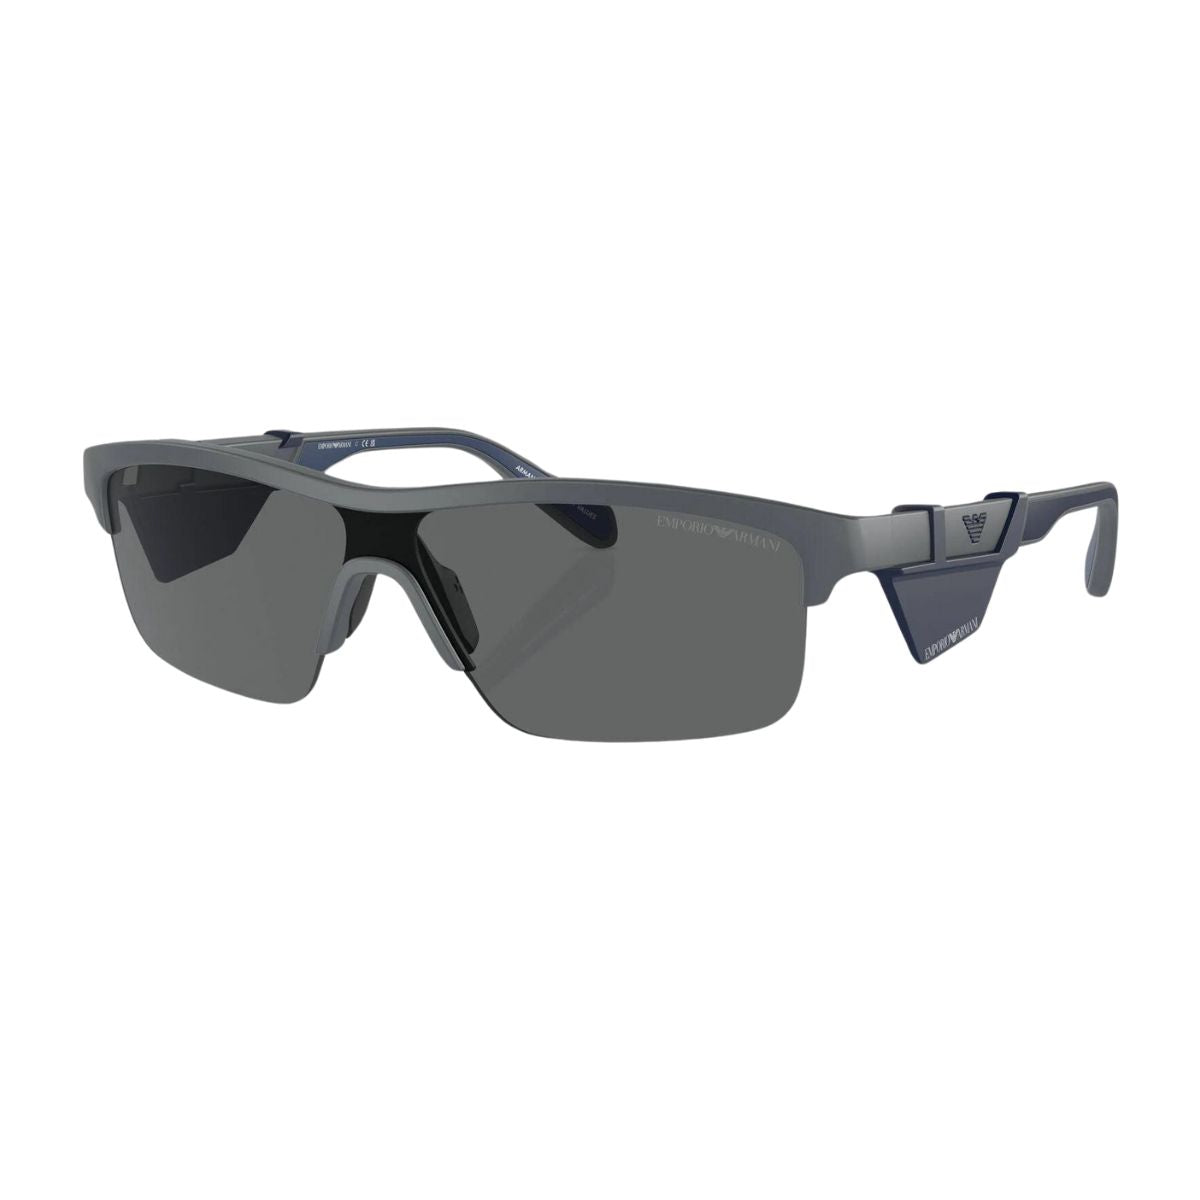 "Buy Trending UV Protection Rectangle Sunglasses For Men's | Optorium"